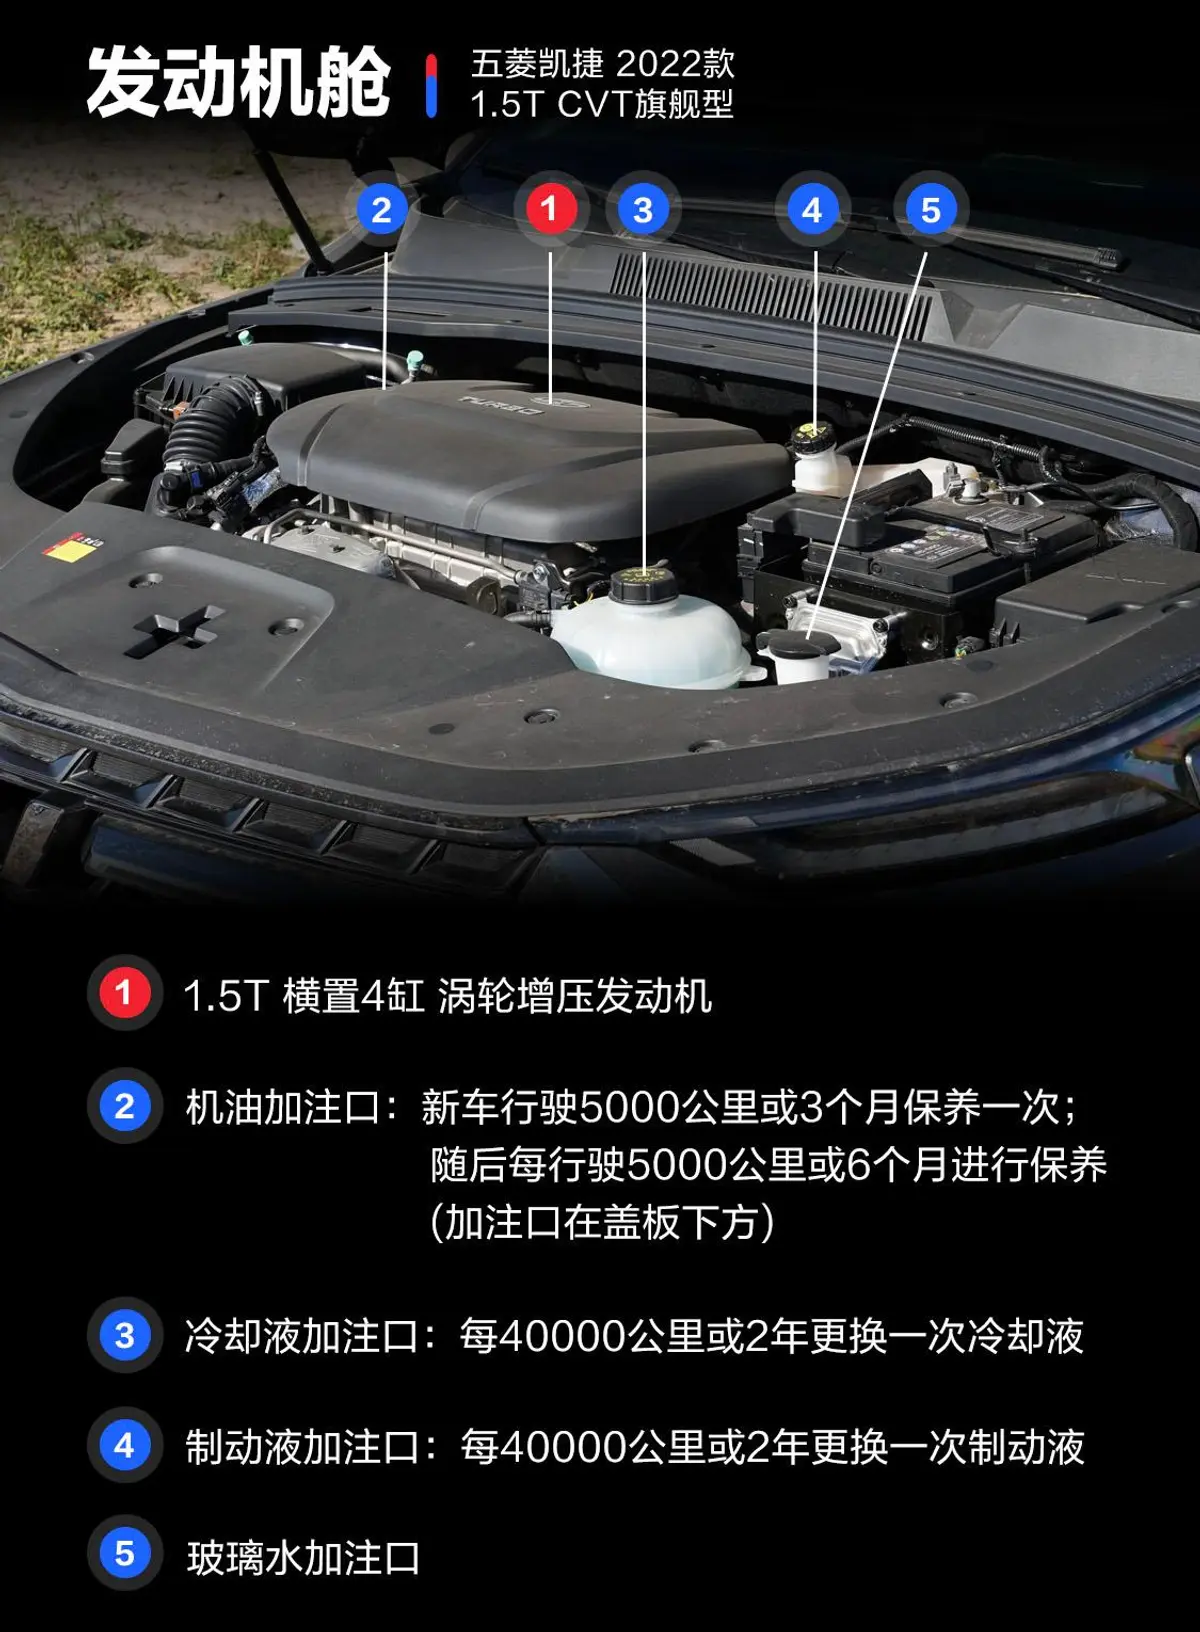 五菱凯捷1.5T CVT旗舰型